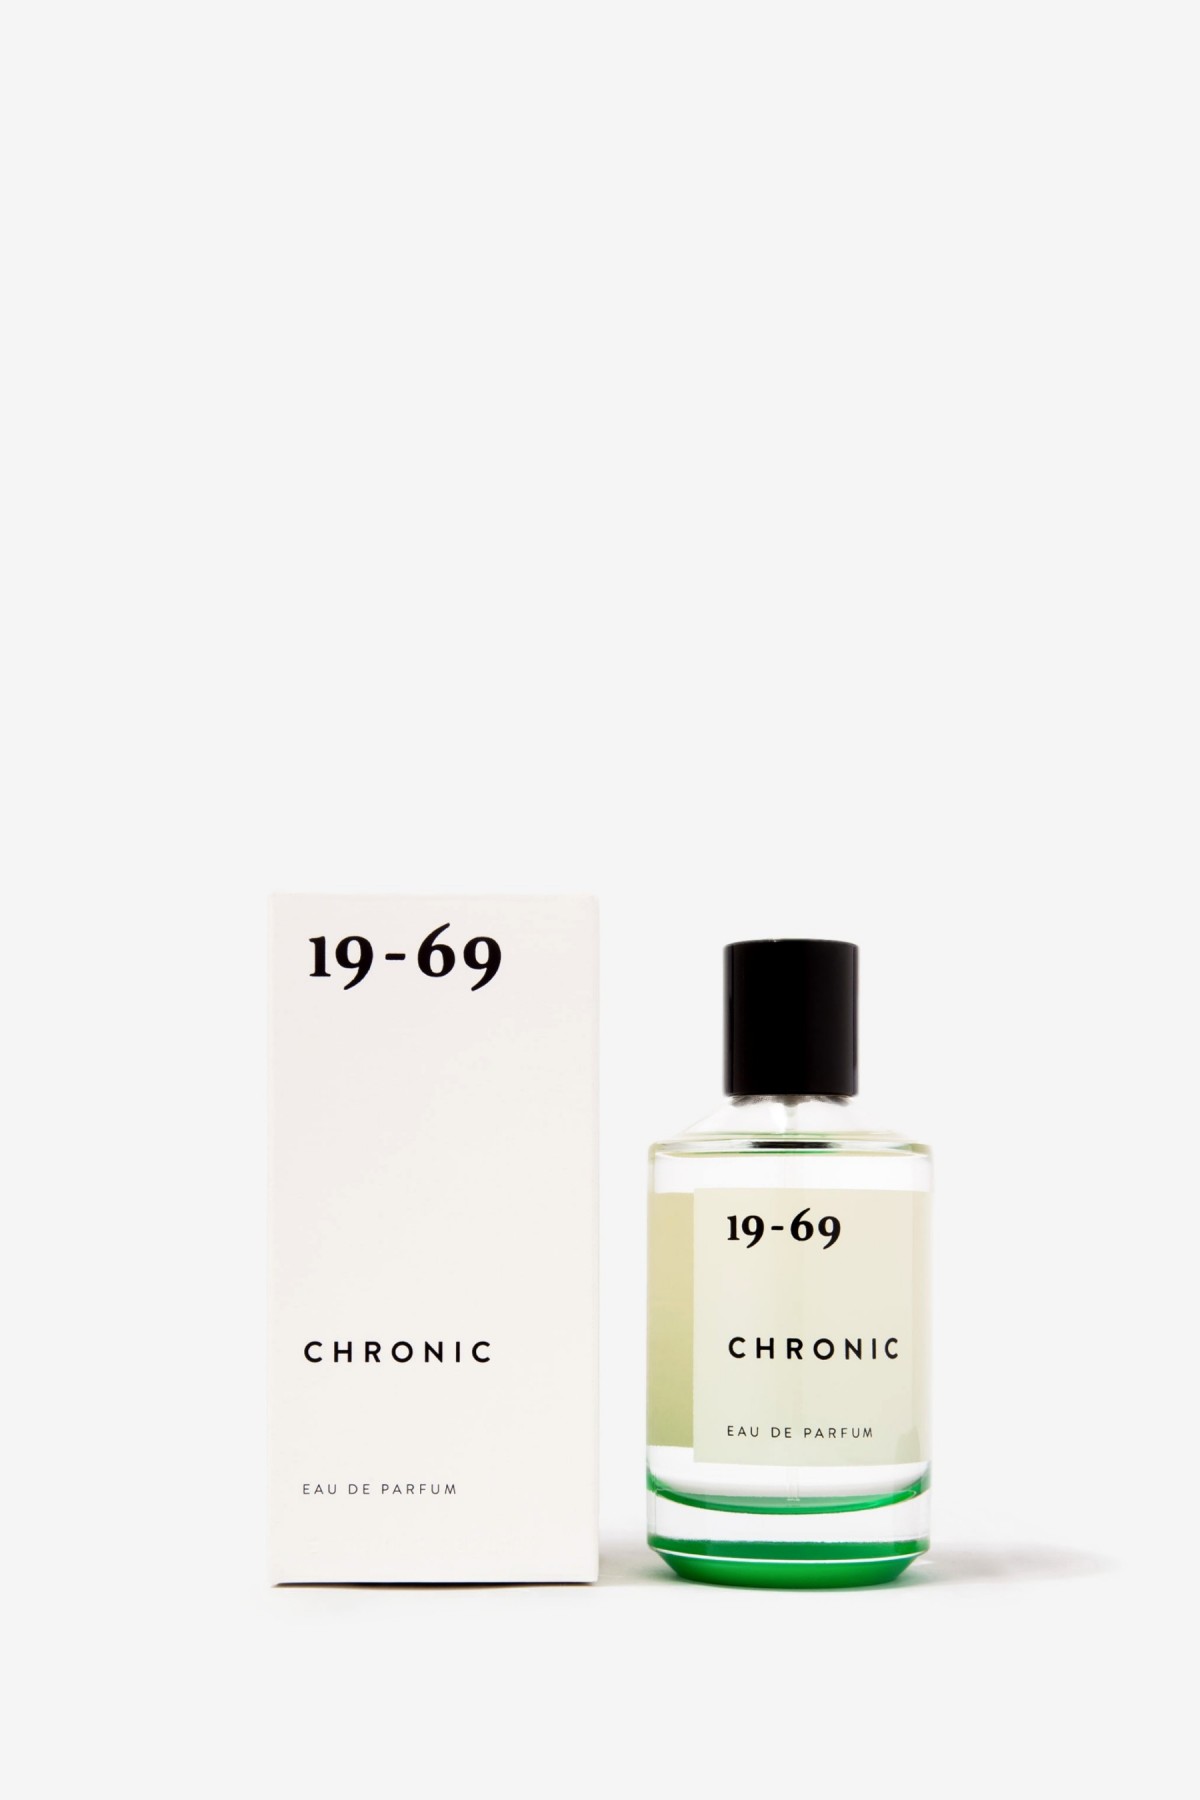 19-69 Chronic Eau de Parfum in 100ml